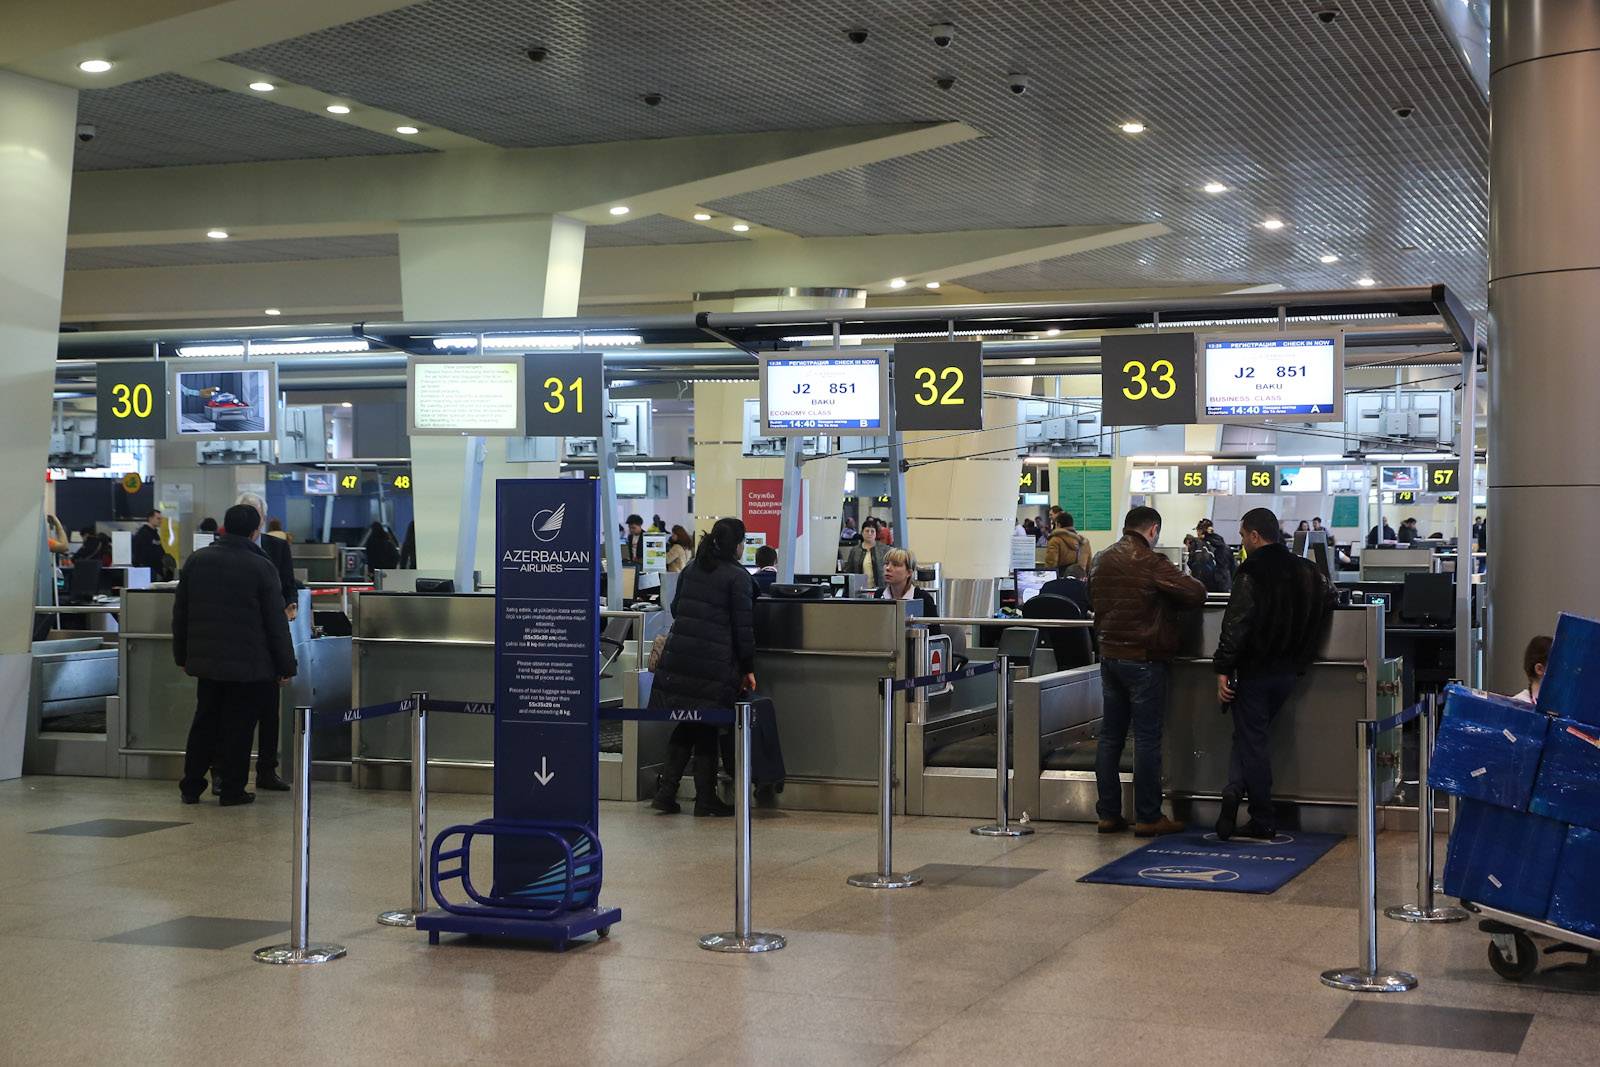 Как правильно пройти регистрацию на рейс азал (азербайджанских авиалиний)